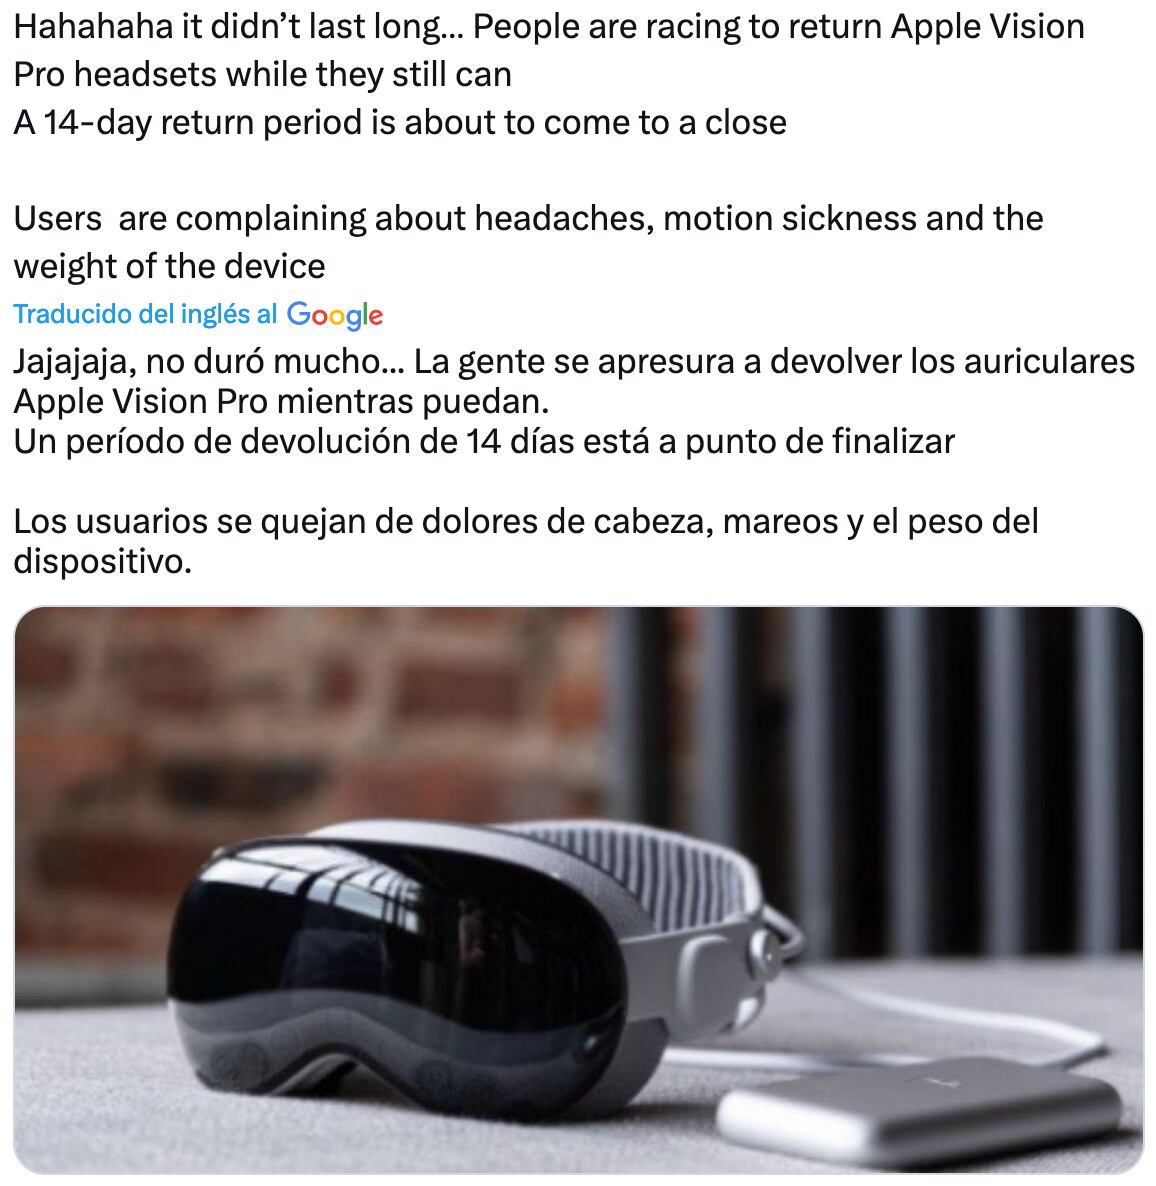 Muchos usuarios están devolviendo las gafas Apple Vision Pro por